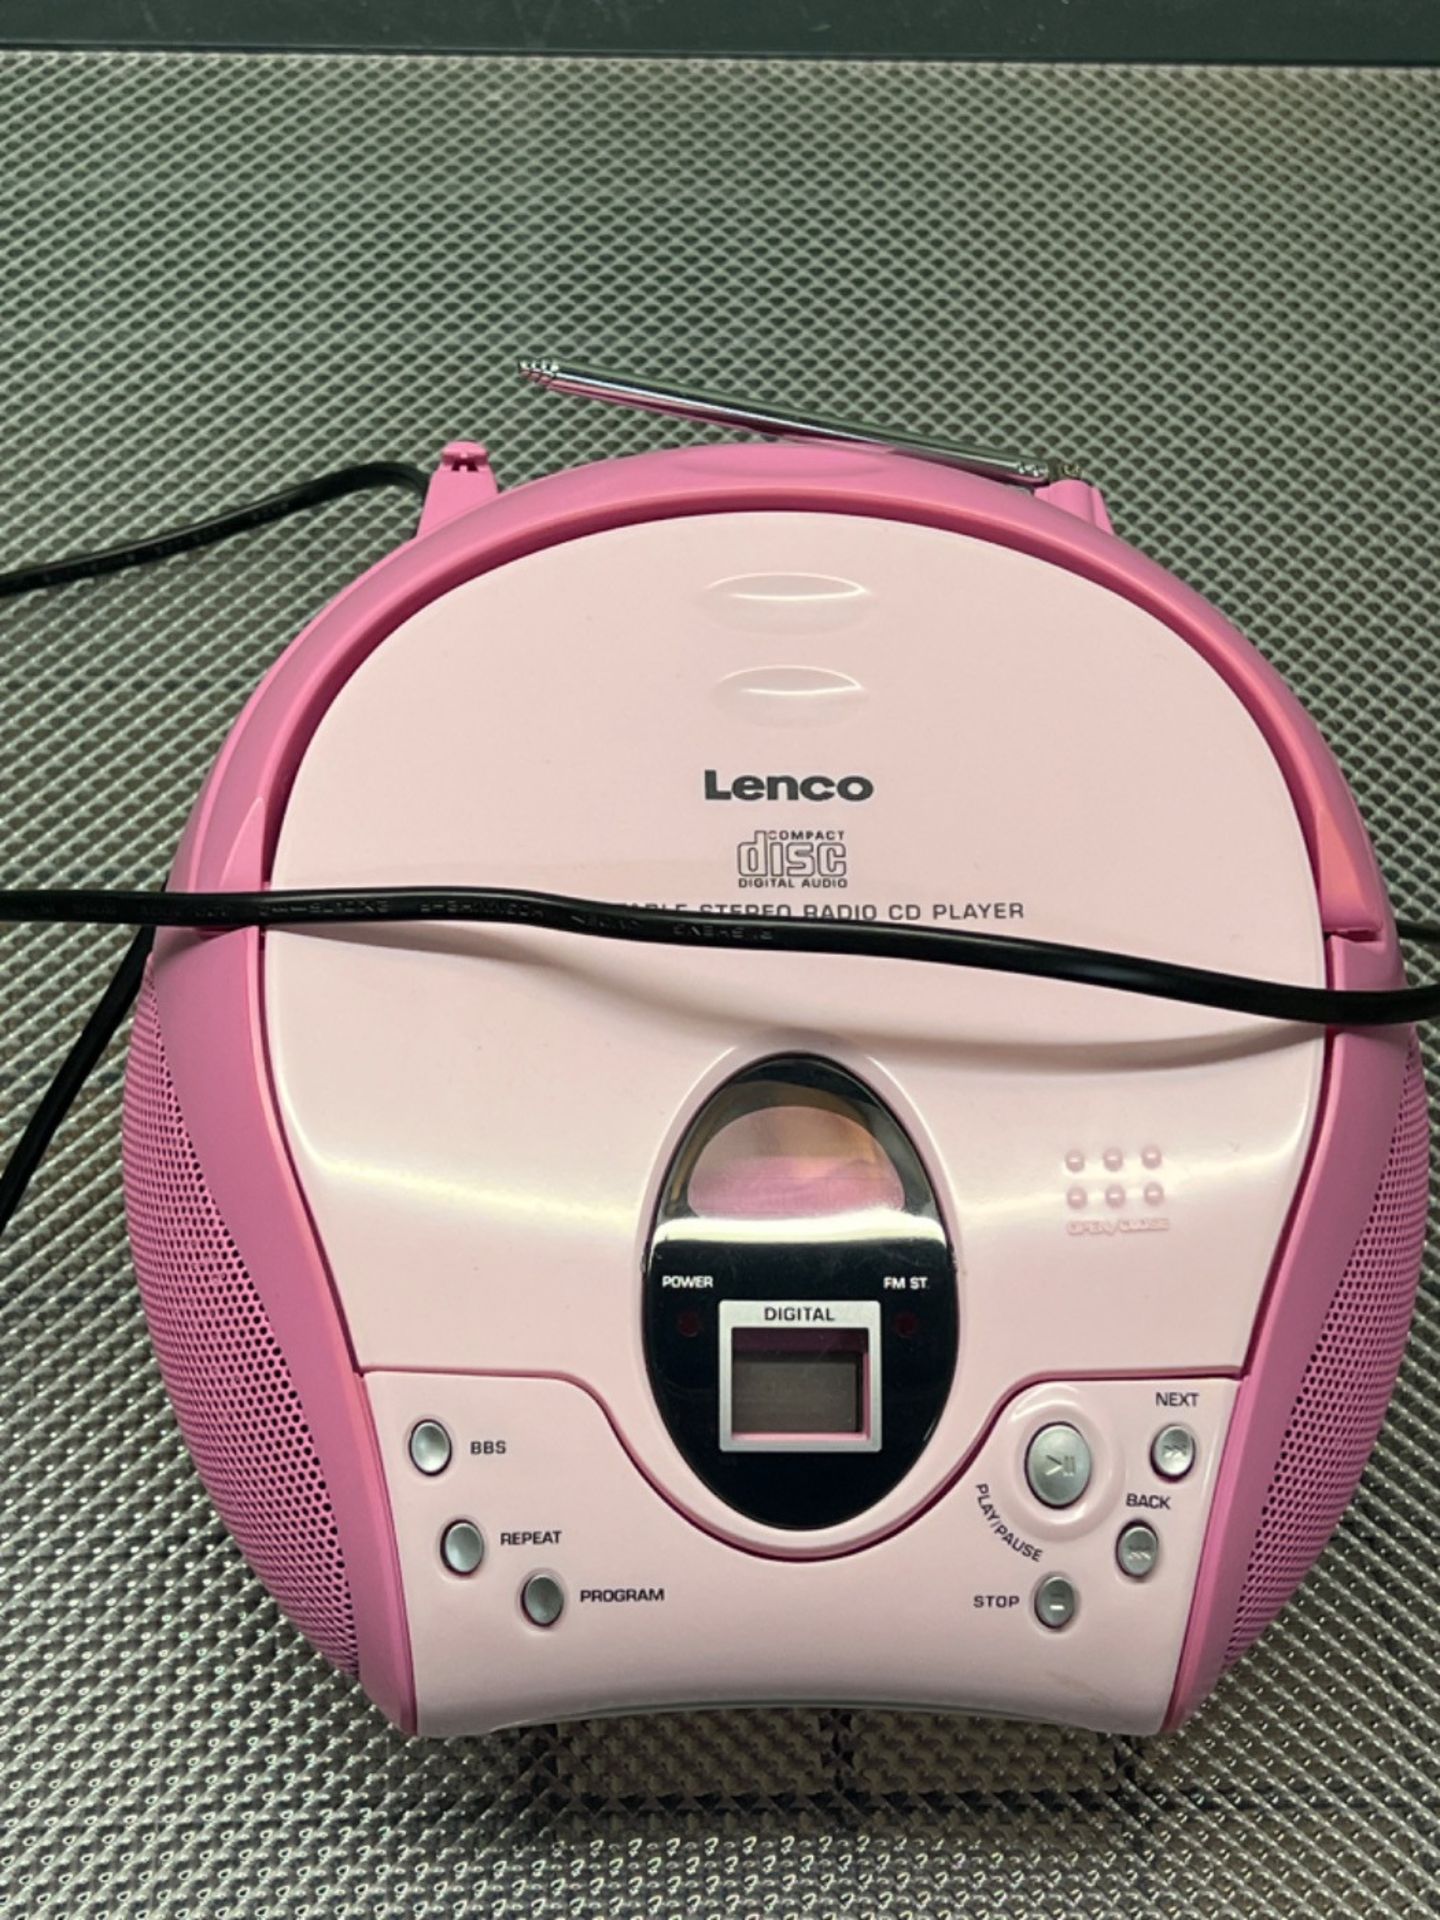 Lenco SCD24 CD Player for Children CD Radio - Image 3 of 3